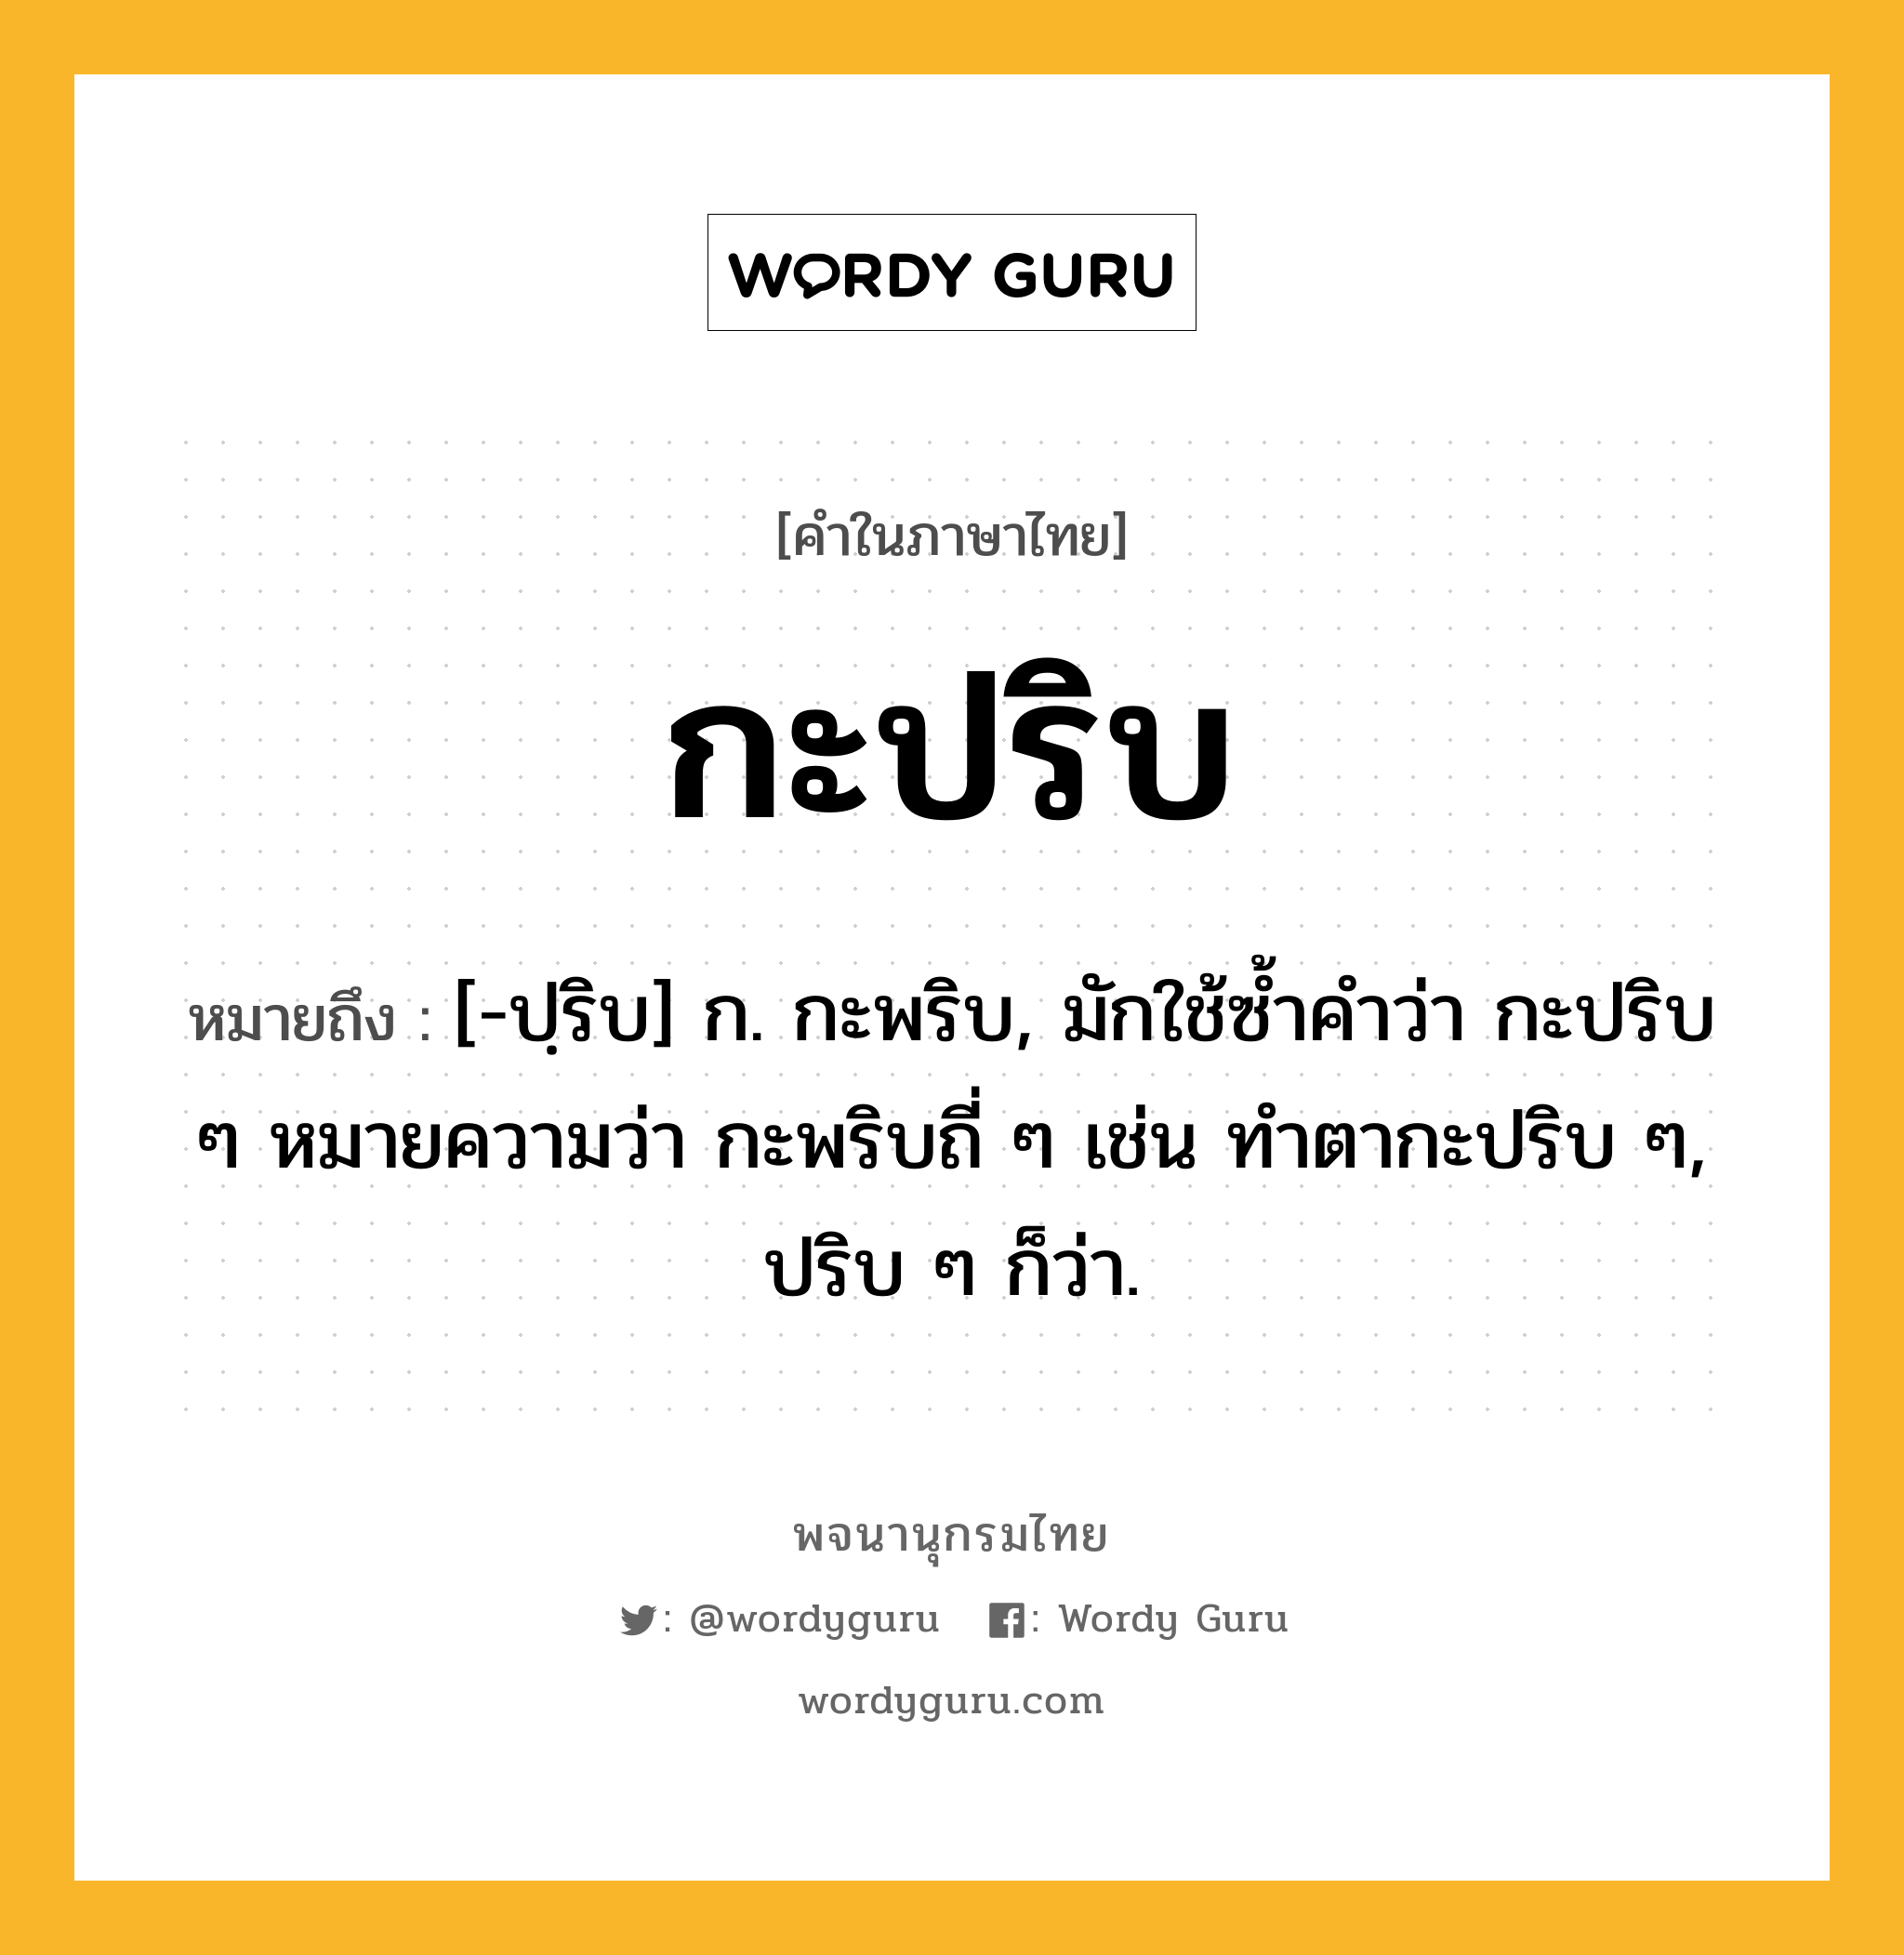 กะปริบ ความหมาย หมายถึงอะไร?, คำในภาษาไทย กะปริบ หมายถึง [-ปฺริบ] ก. กะพริบ, มักใช้ซํ้าคําว่า กะปริบ ๆ หมายความว่า กะพริบถี่ ๆ เช่น ทําตากะปริบ ๆ, ปริบ ๆ ก็ว่า.